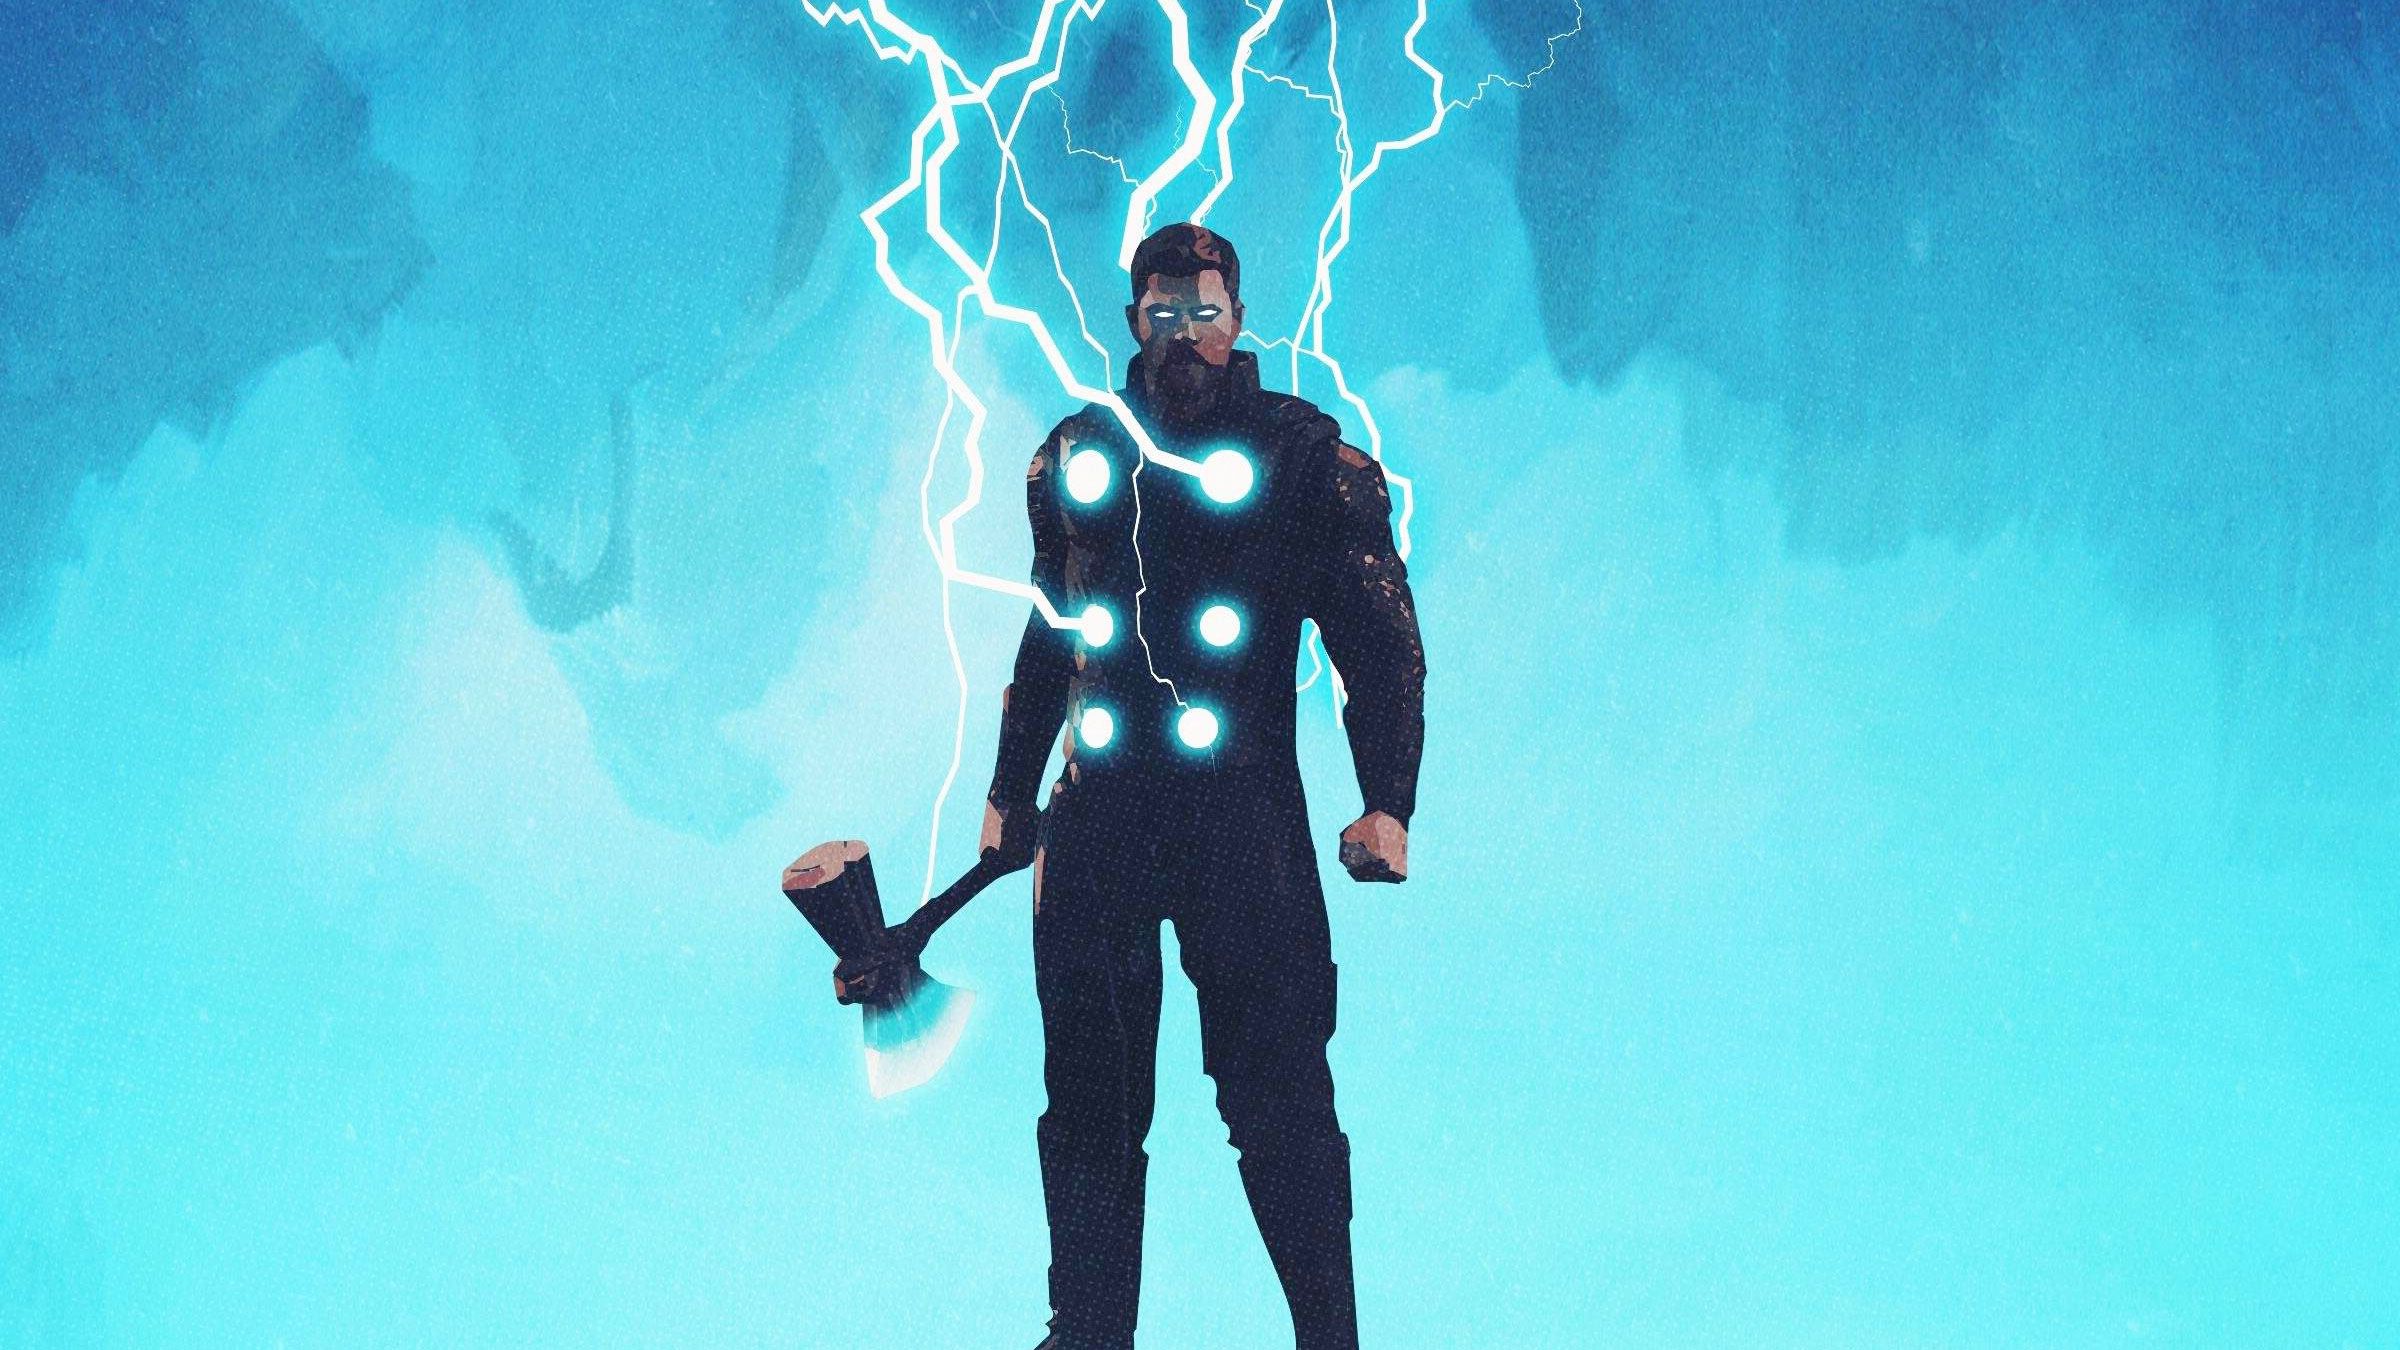 Thor Lightning Wallpaper